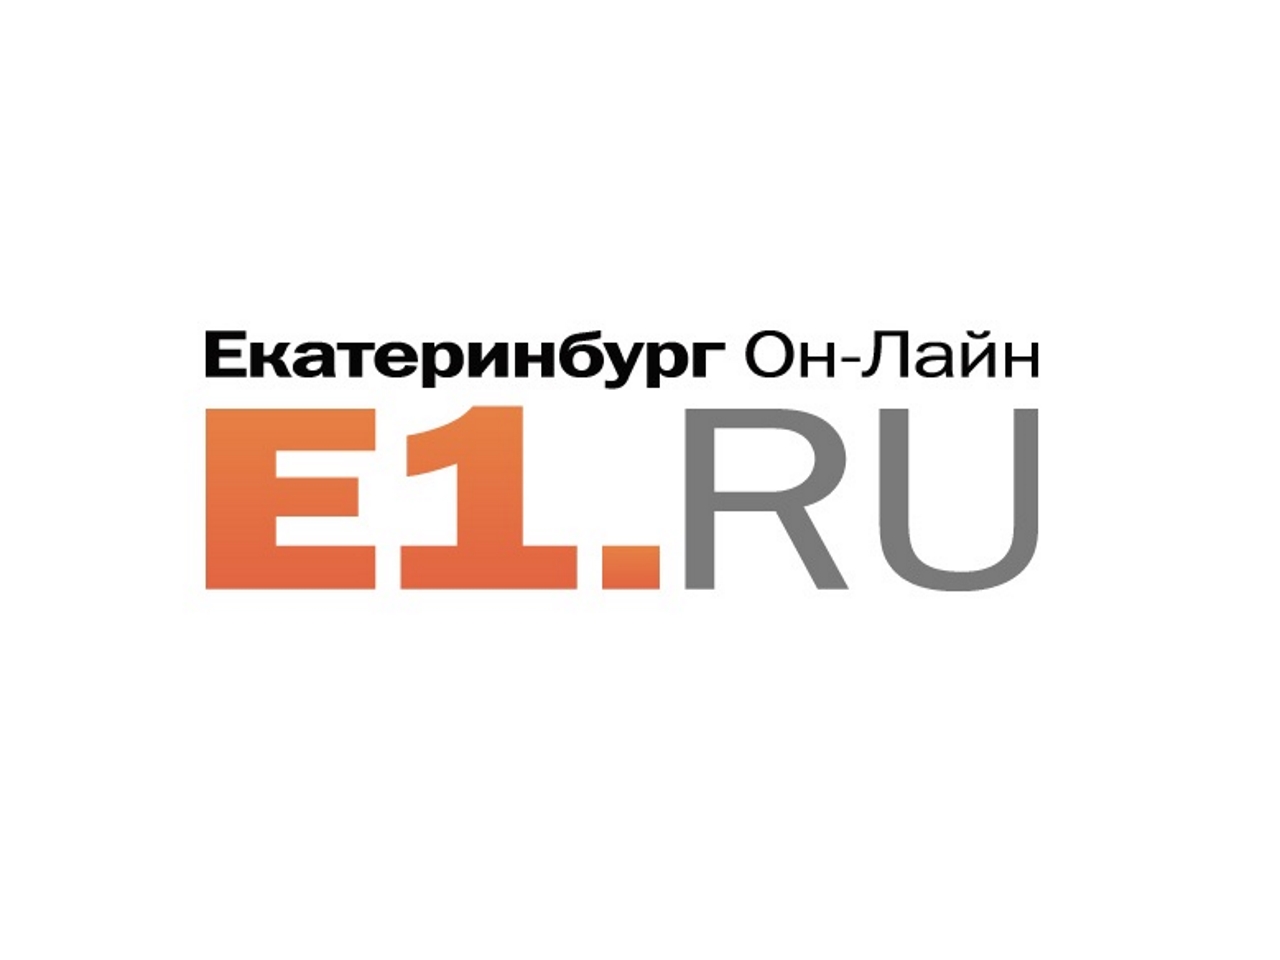 Uk 1 ru. Е1. Е1 лого. Е1 Екатеринбург. Е1. Ру эмблема.